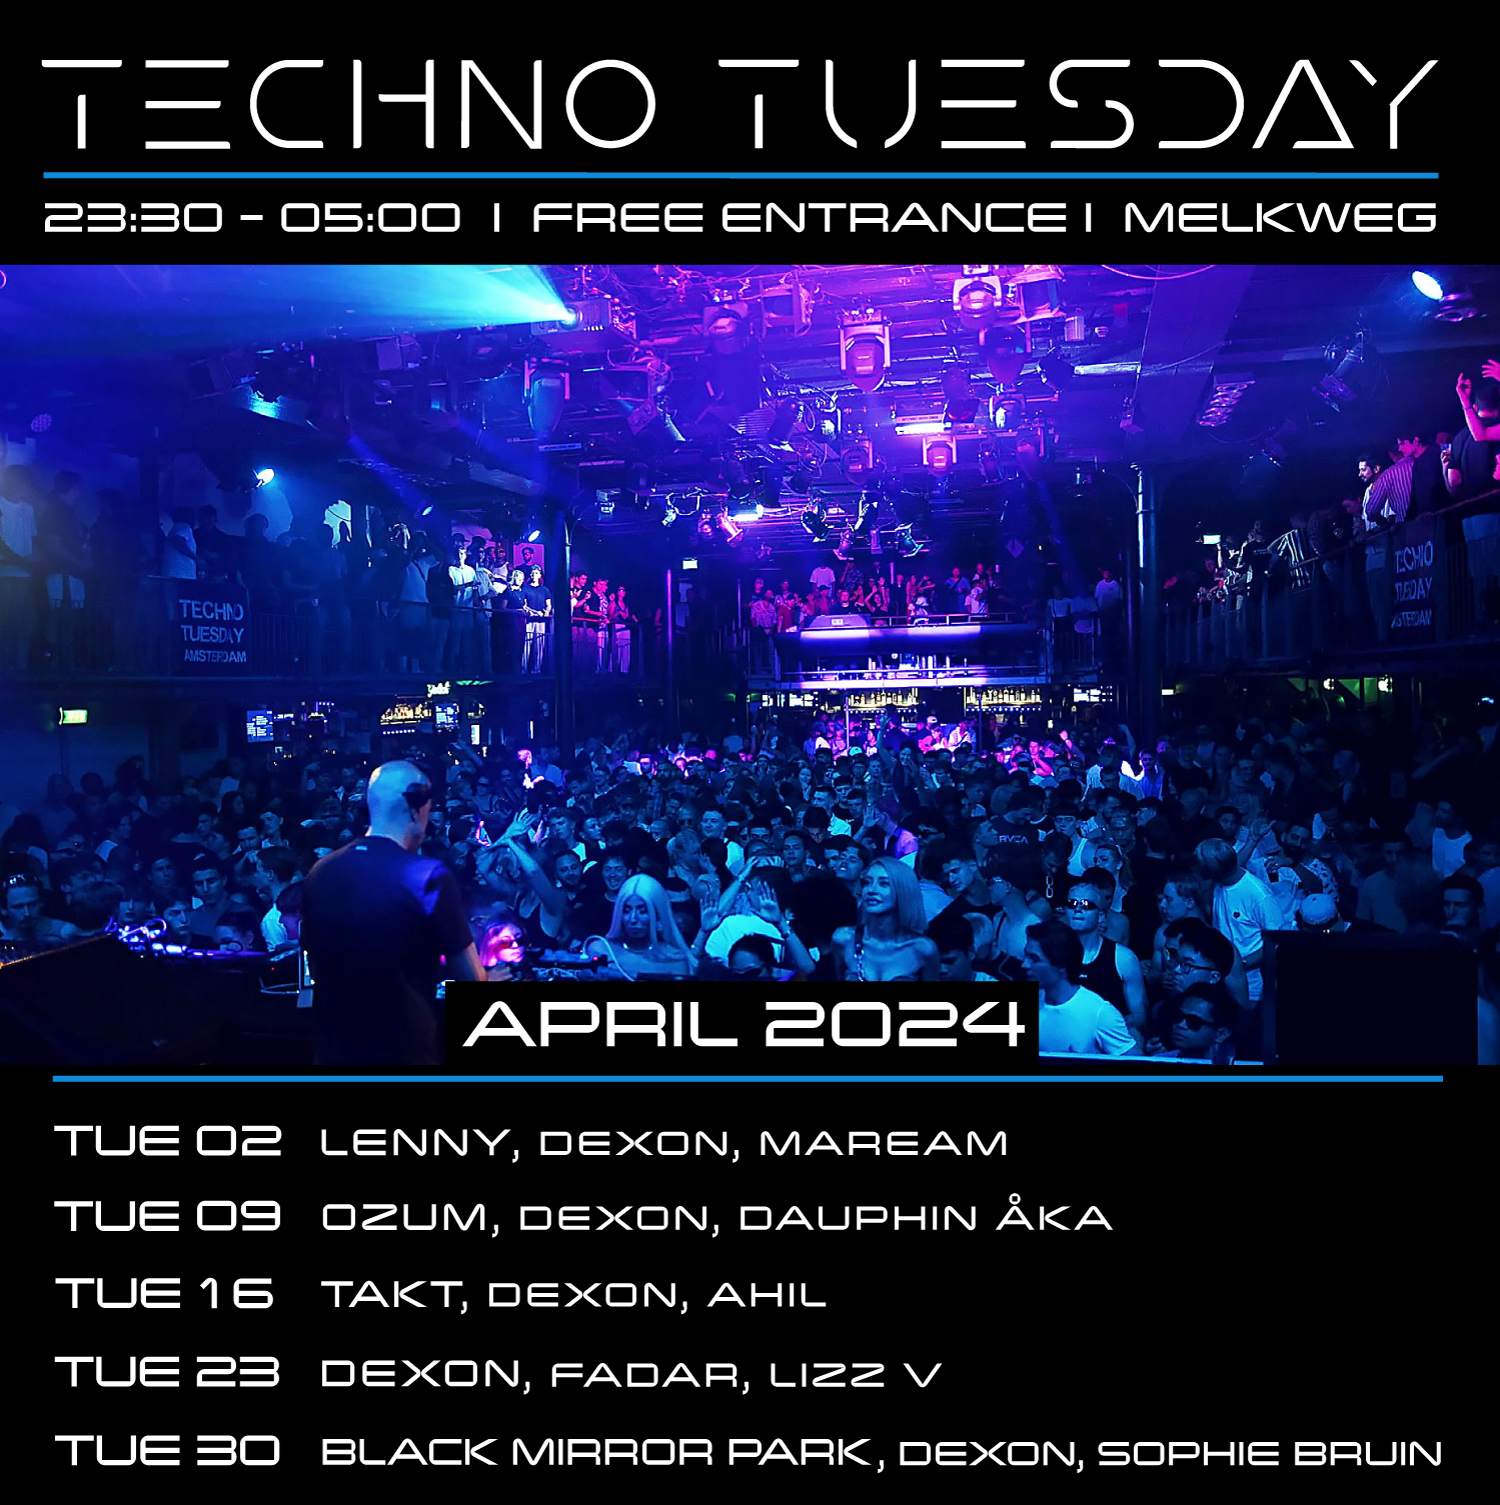 Techno Tuesday Amsterdam, Black Mirror Park, Dexon, Sophie Bruin - フライヤー裏